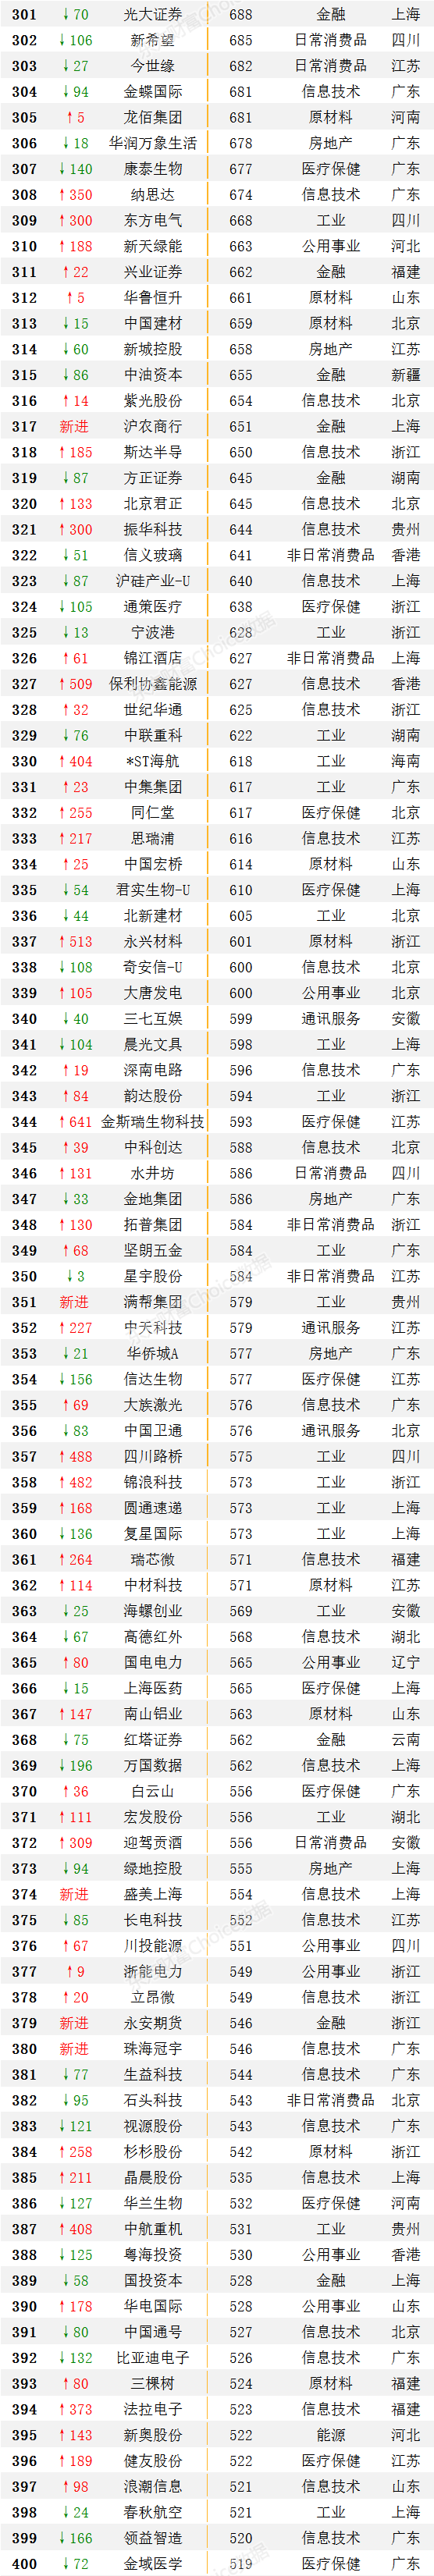 中国上市公司全部名单（中国上市公司500强企业排名）